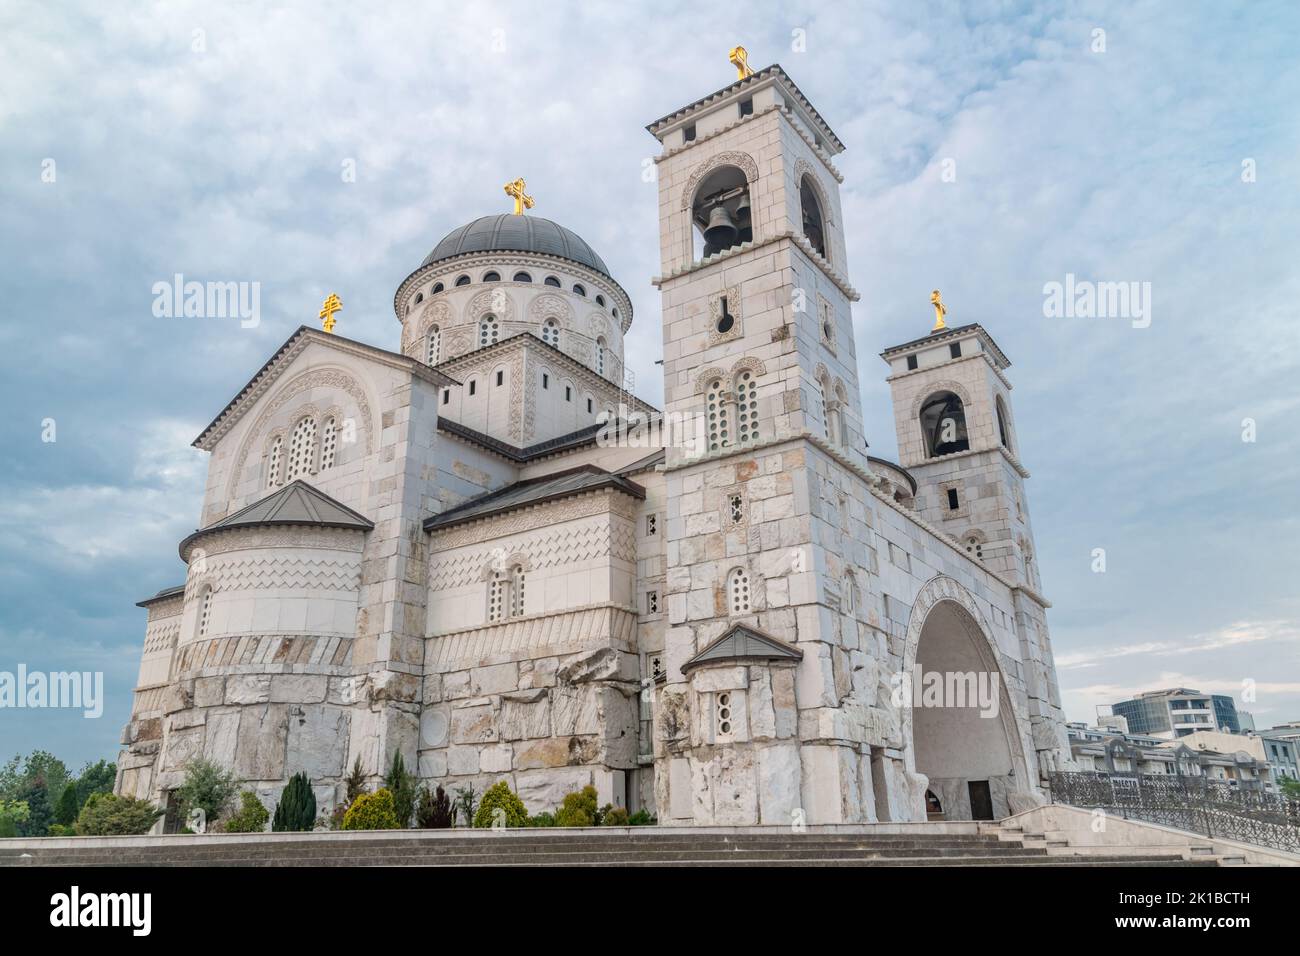 Die Kathedrale der Auferstehung Christi (Saborni Hram Hristovog Vascrsenja) in Podgorica, Montenegro. Stockfoto